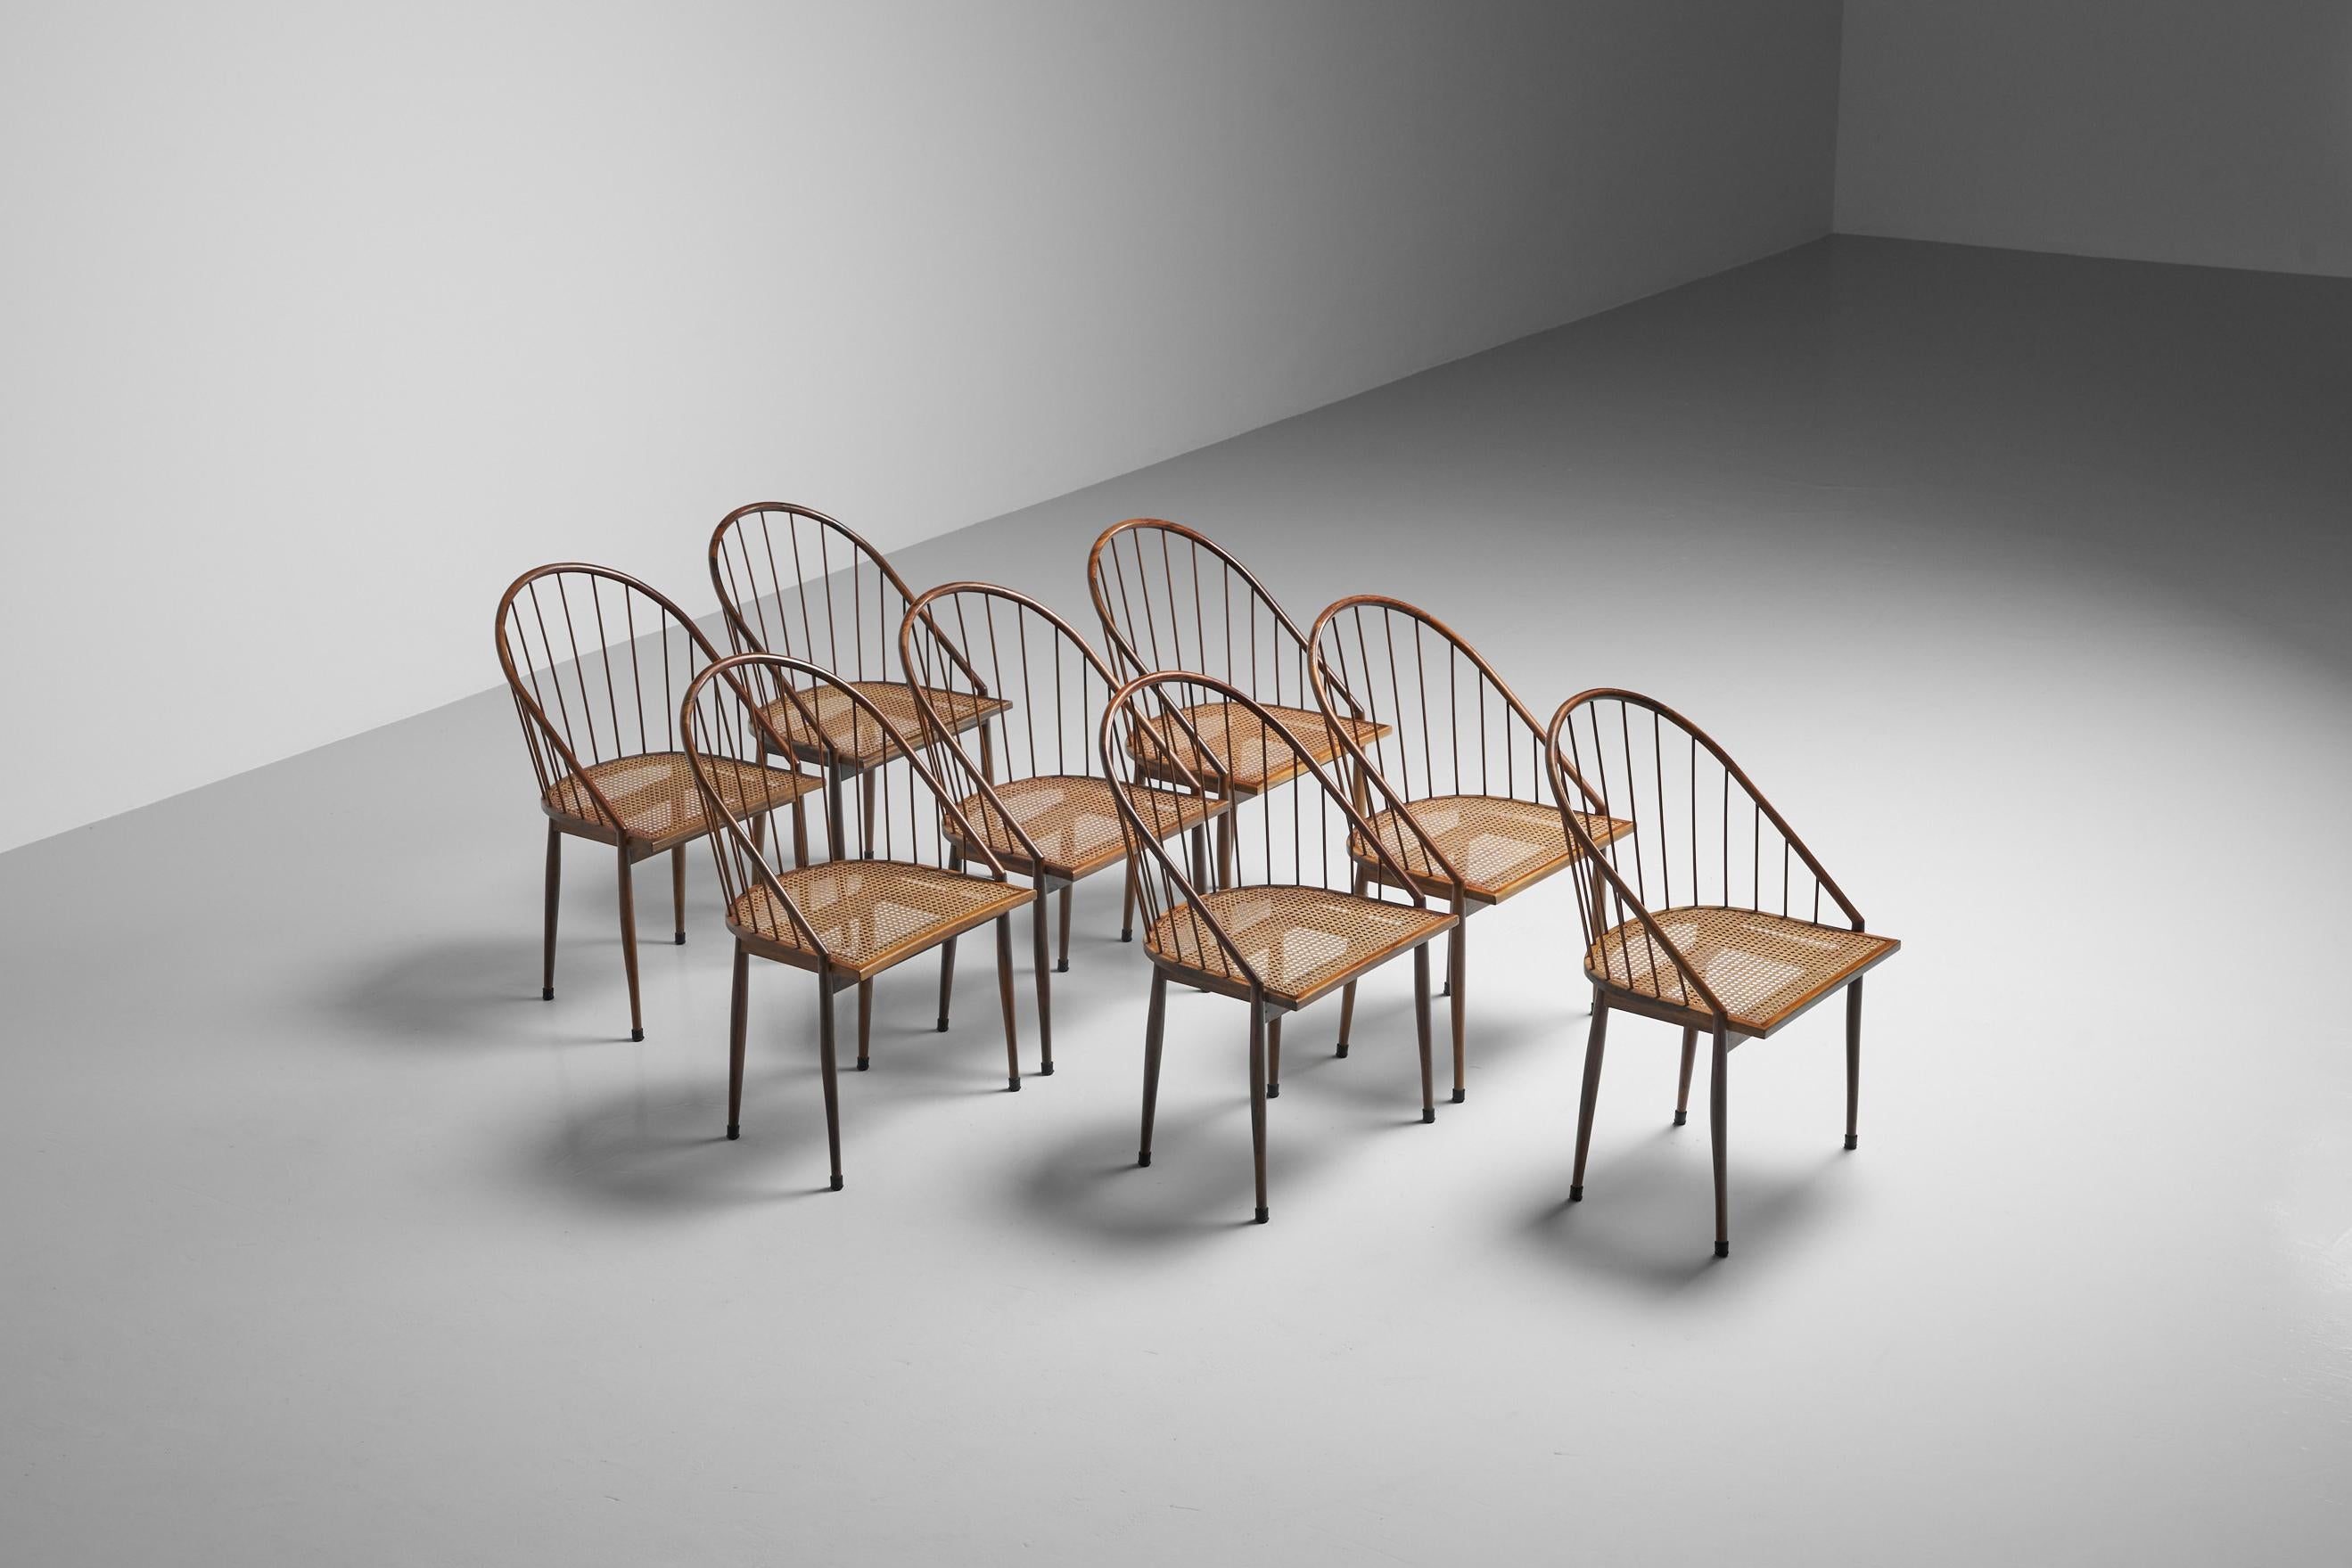 Äußerst seltene und gesuchte 'Curva'-Stühle, entworfen von Joaquim Tenreiro und hergestellt von seiner eigenen Firma Tenreiro Movèis & Decorações, Brasilien 1961. Tenreiro war Bildhauer, Maler, Graveur und Designer und stammte aus einer Familie von